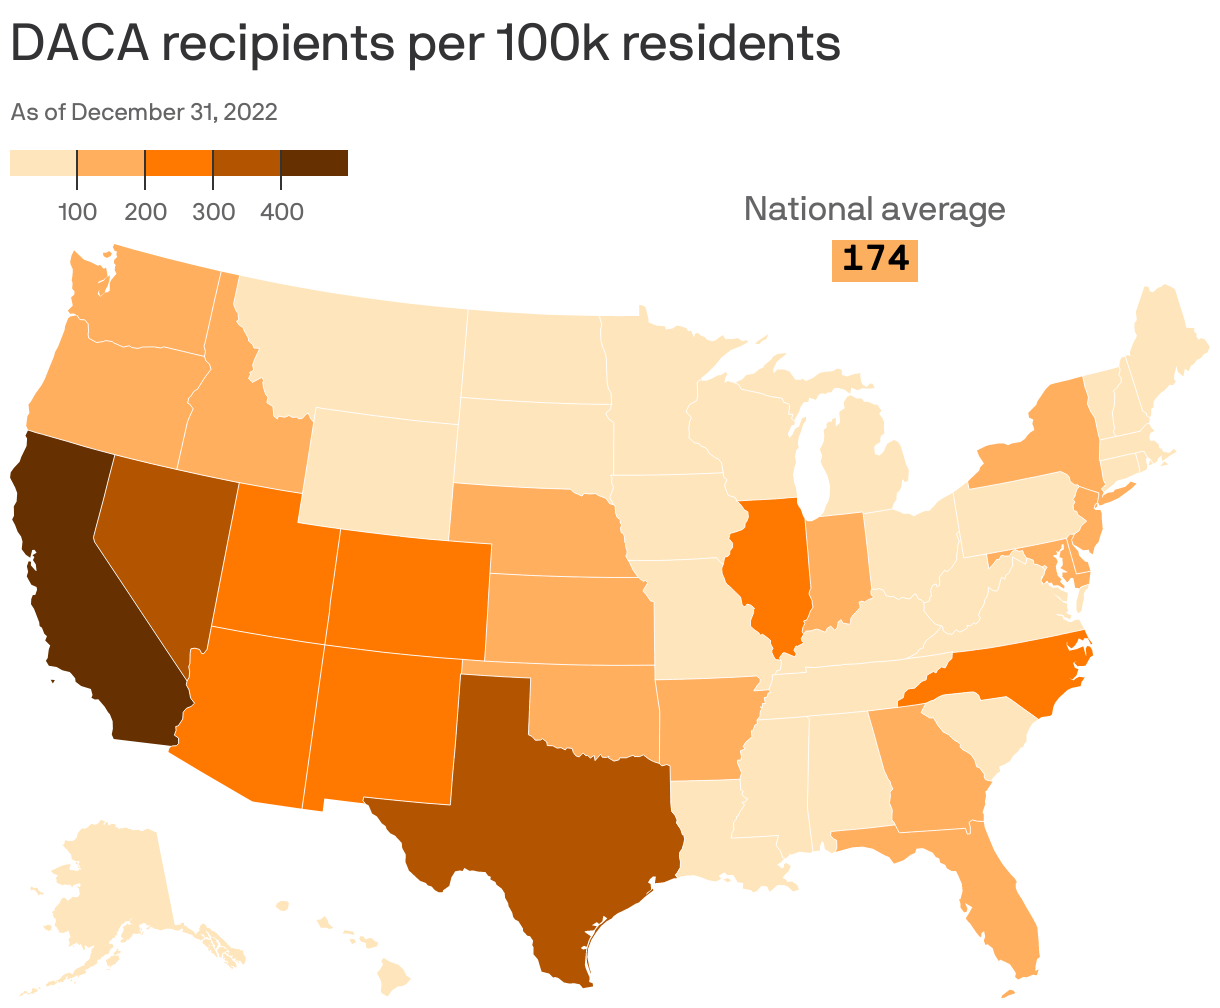 DACA recipients per 100k residents